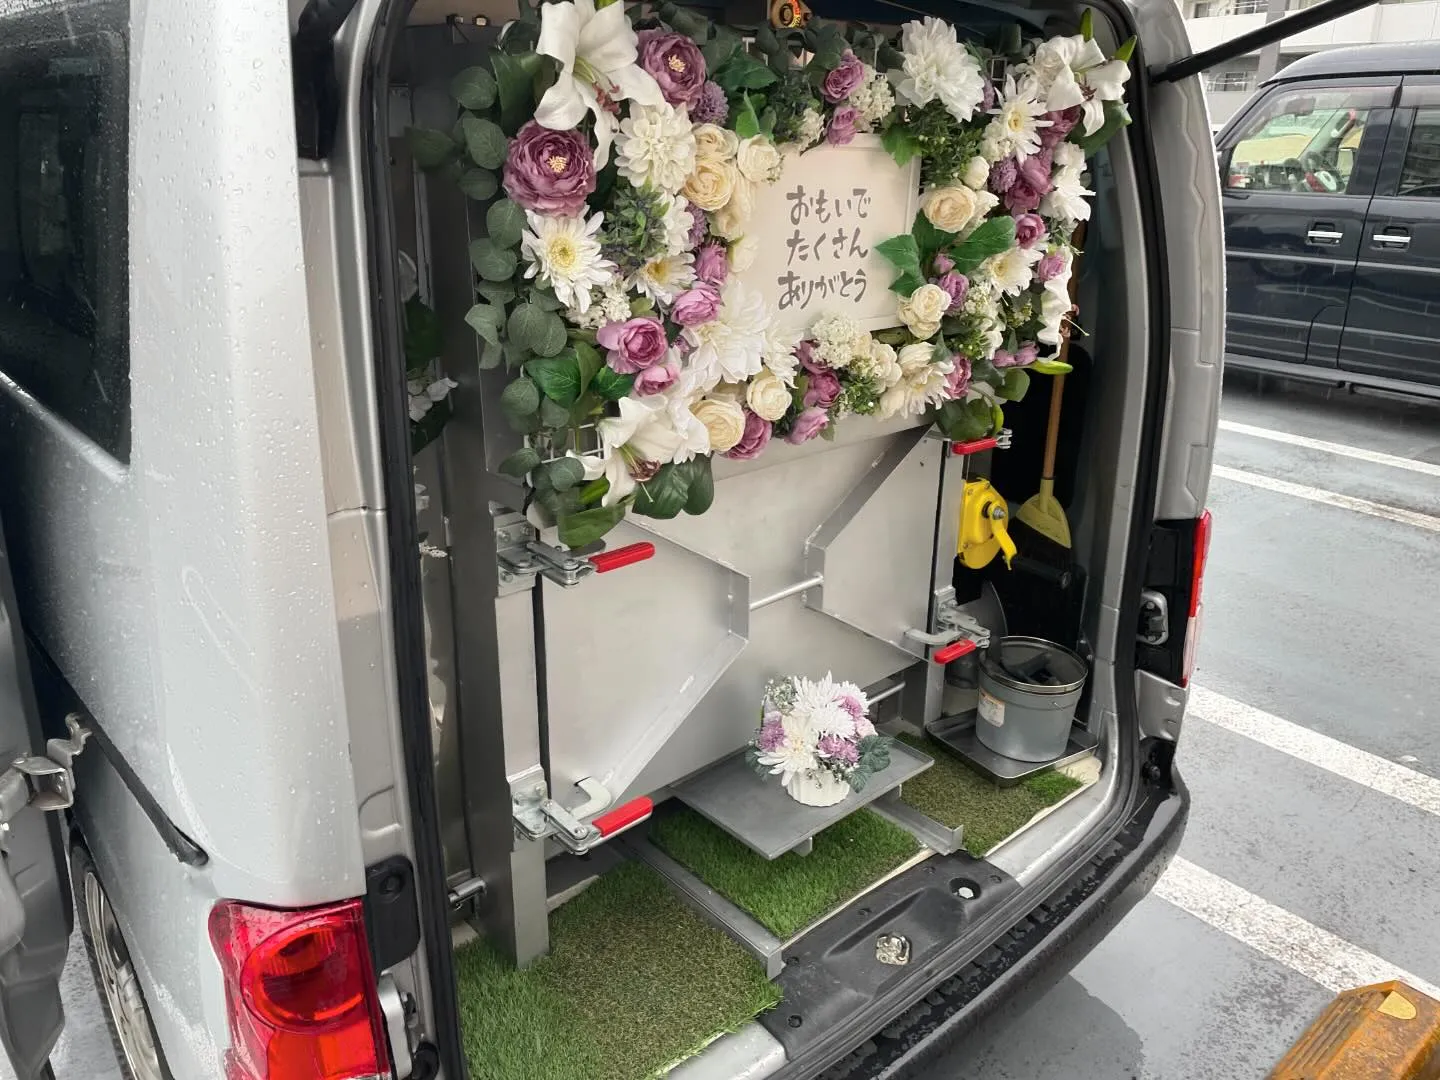 東京都昭島市にてわんちゃんのご火葬に伺いました。